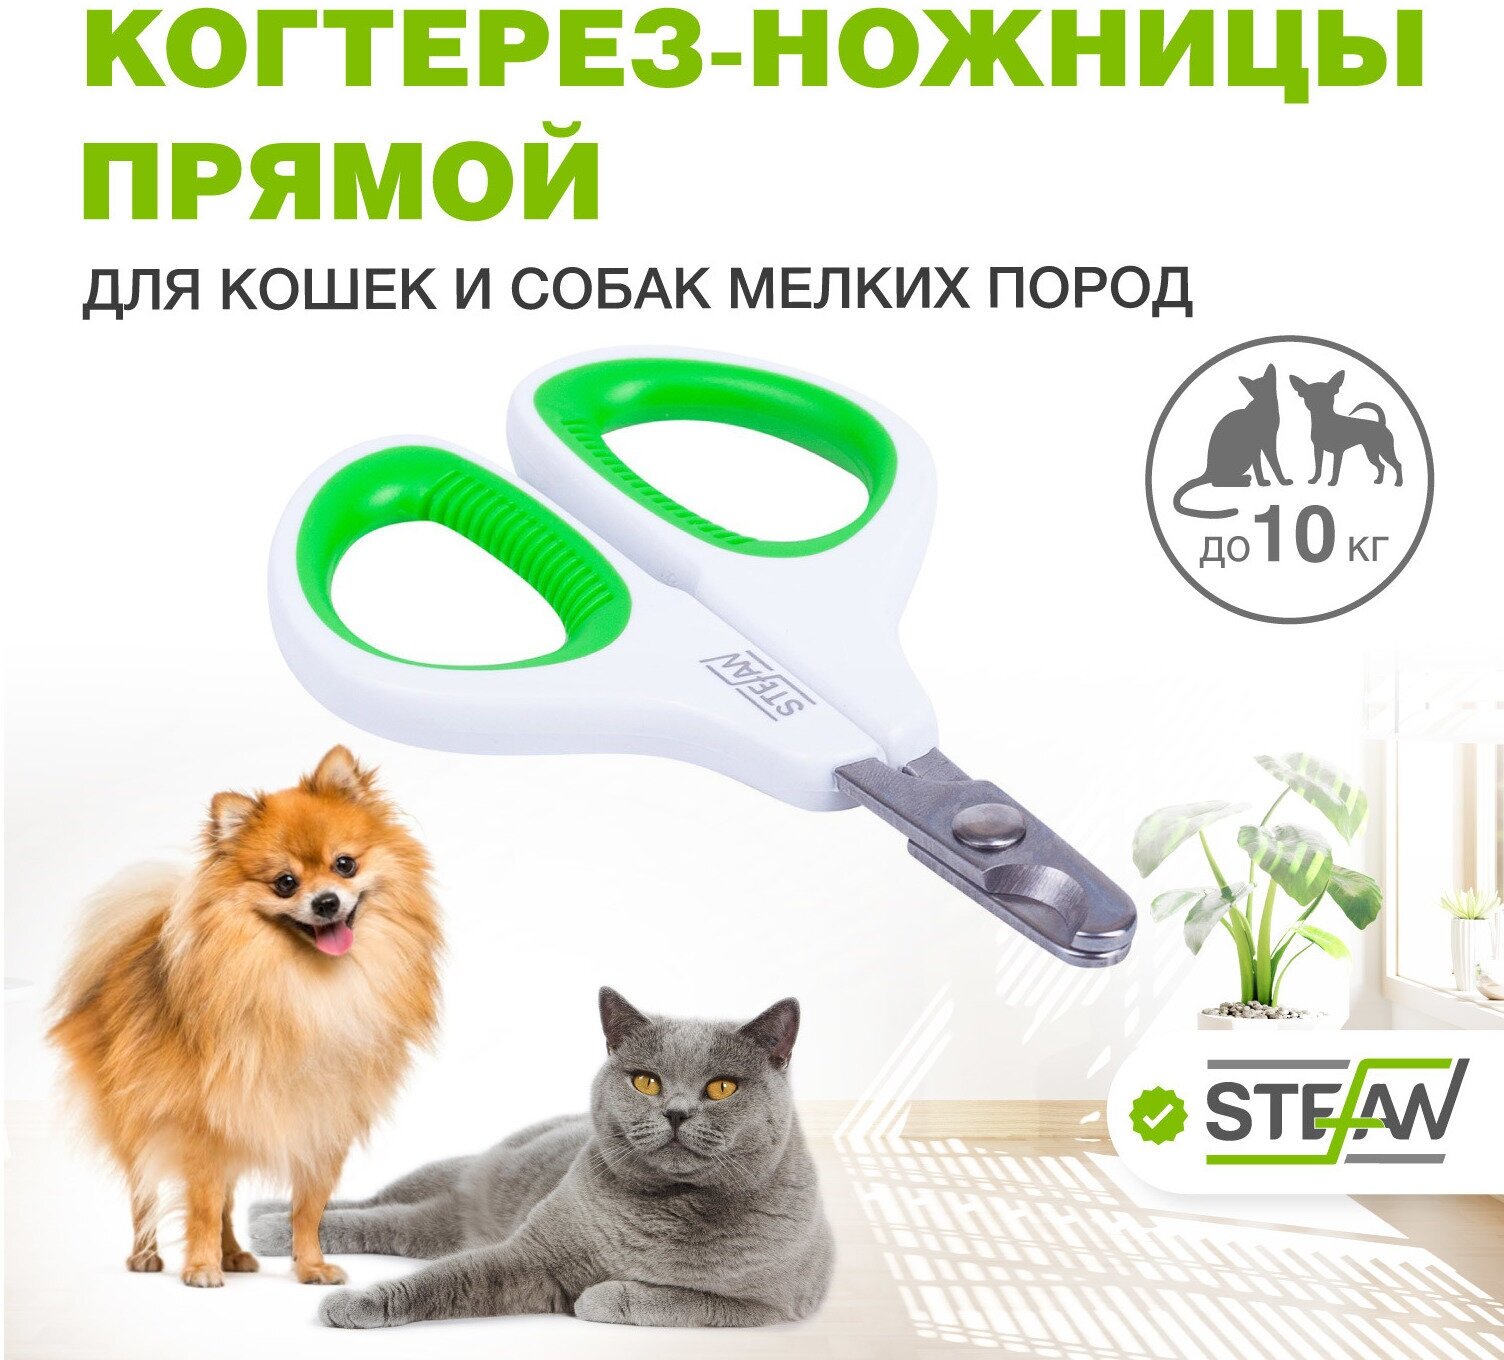 Когтерез-ножницы STEFAN (Штефан) для животных (кошек, собак) для груминга прямой малый GXS020